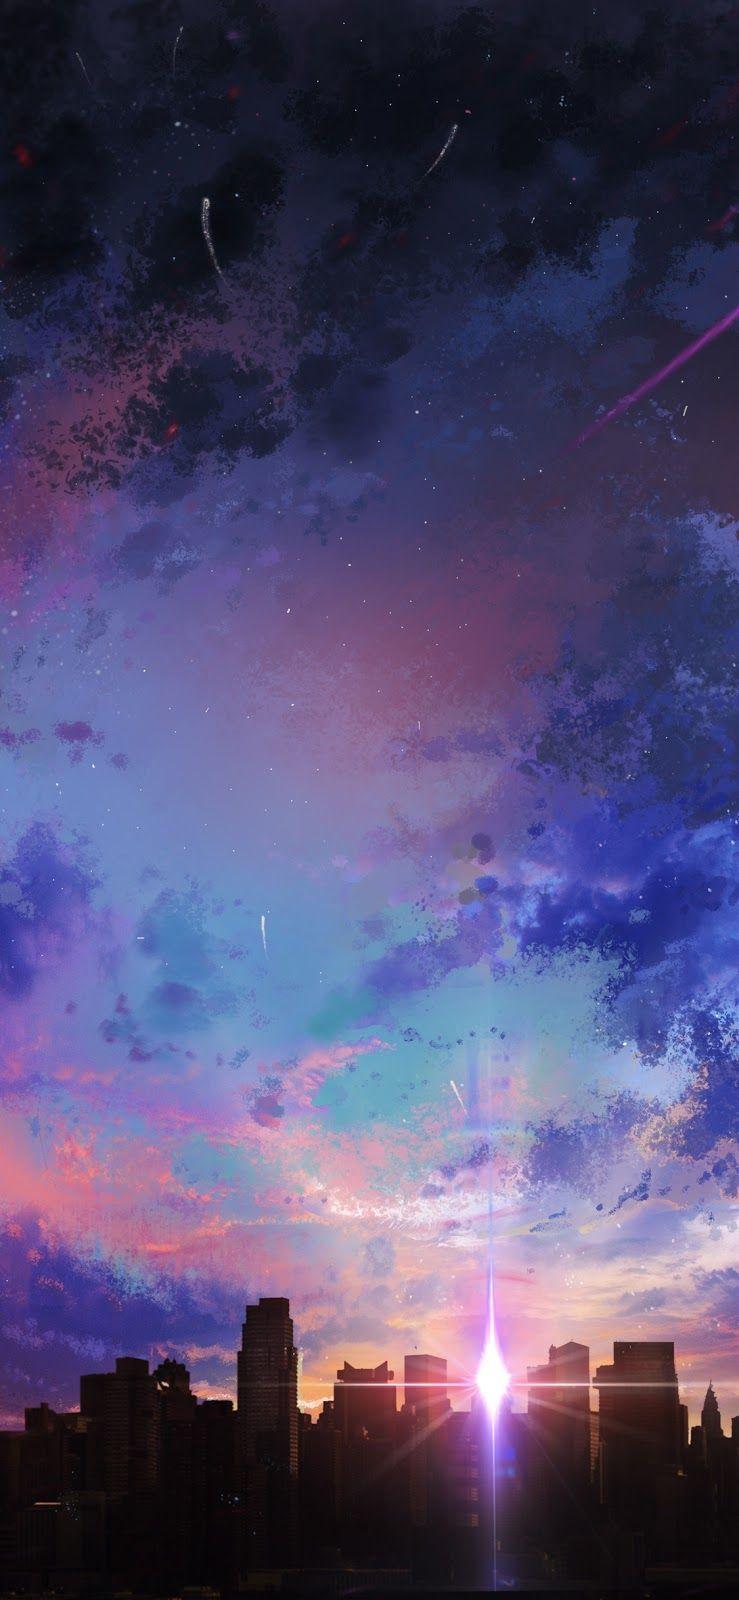 Anime Sunset iPhone Wallpapers - Top Những Hình Ảnh Đẹp